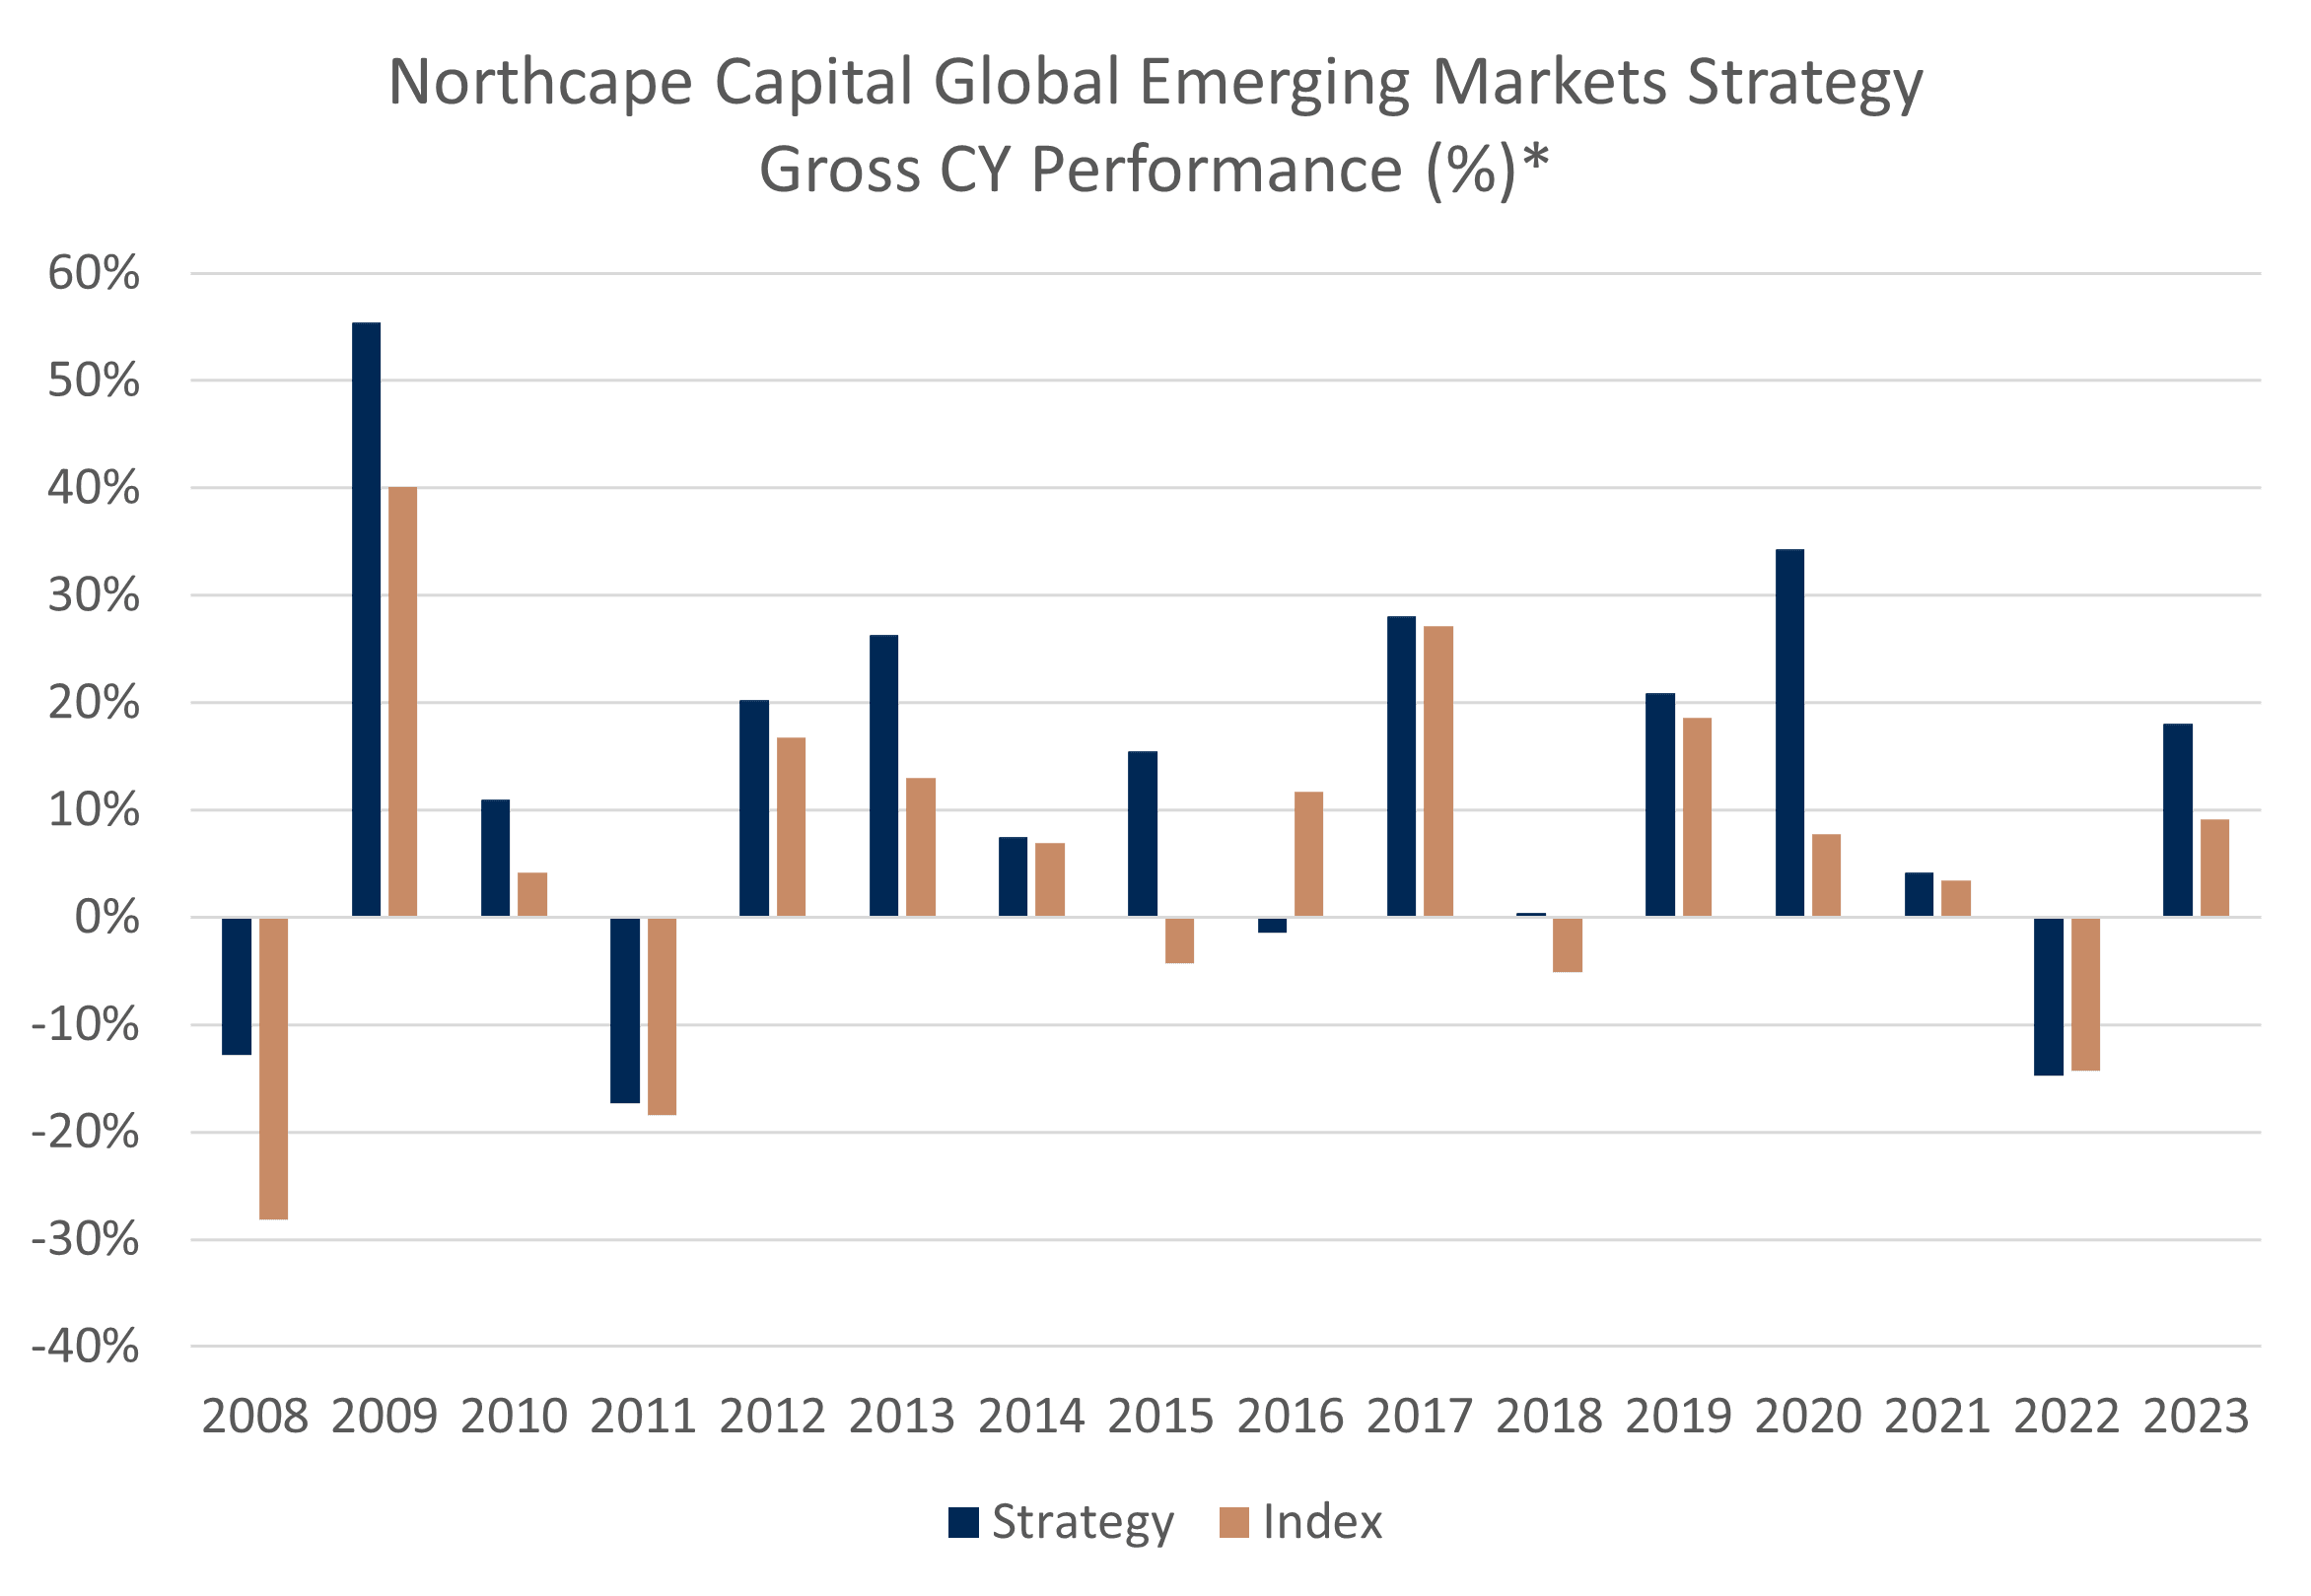 Northcape Capital Global Emerging Markets Strategy - Gross Calendar Year Outperformance Chart - Warakirri Asset Management